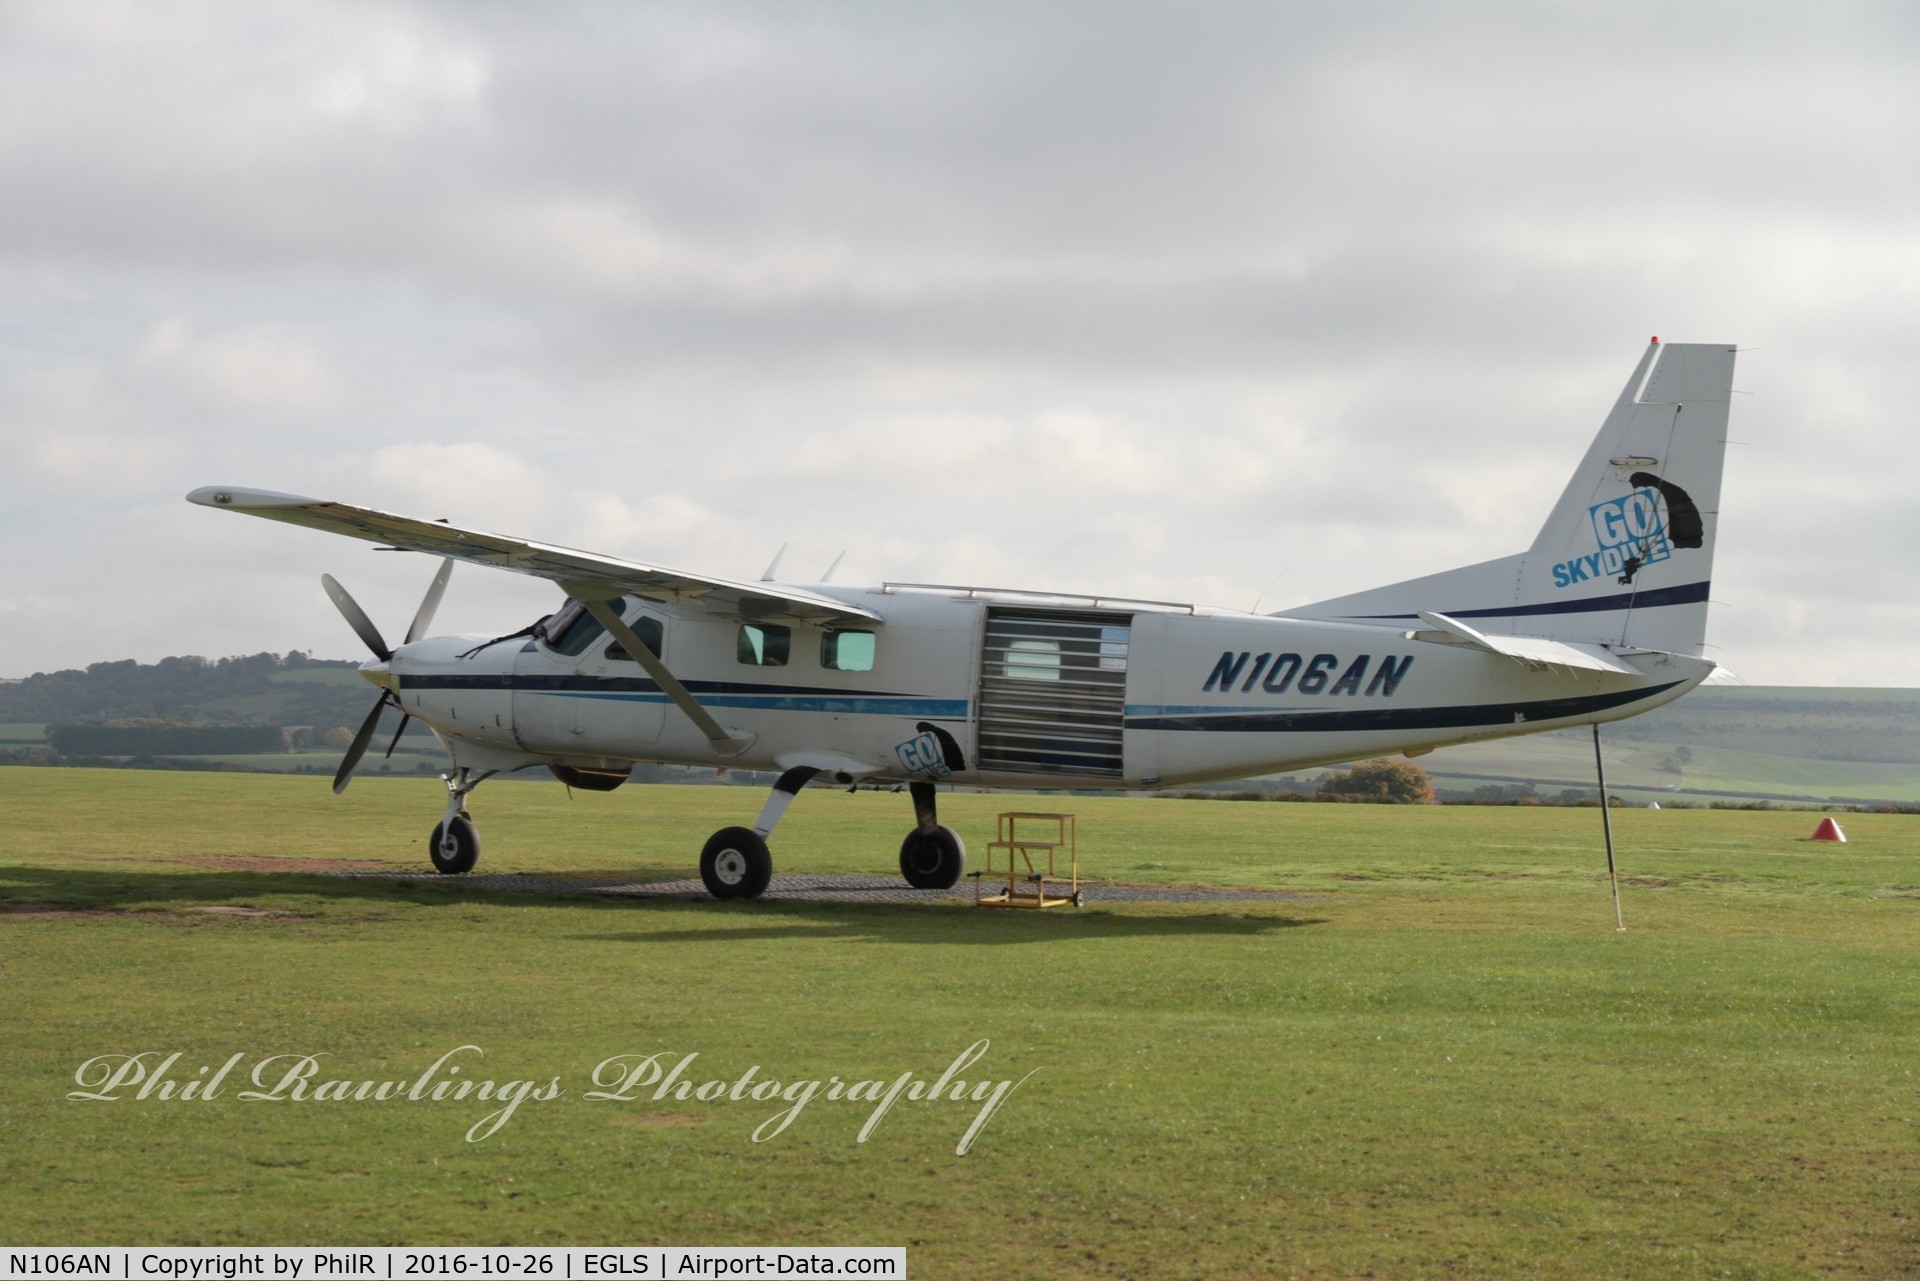 N106AN, 2002 Cessna 208B Super Cargomaster C/N 208B0917, N106AN 2001 Cessna 208B Grand Caravan Old Sarum